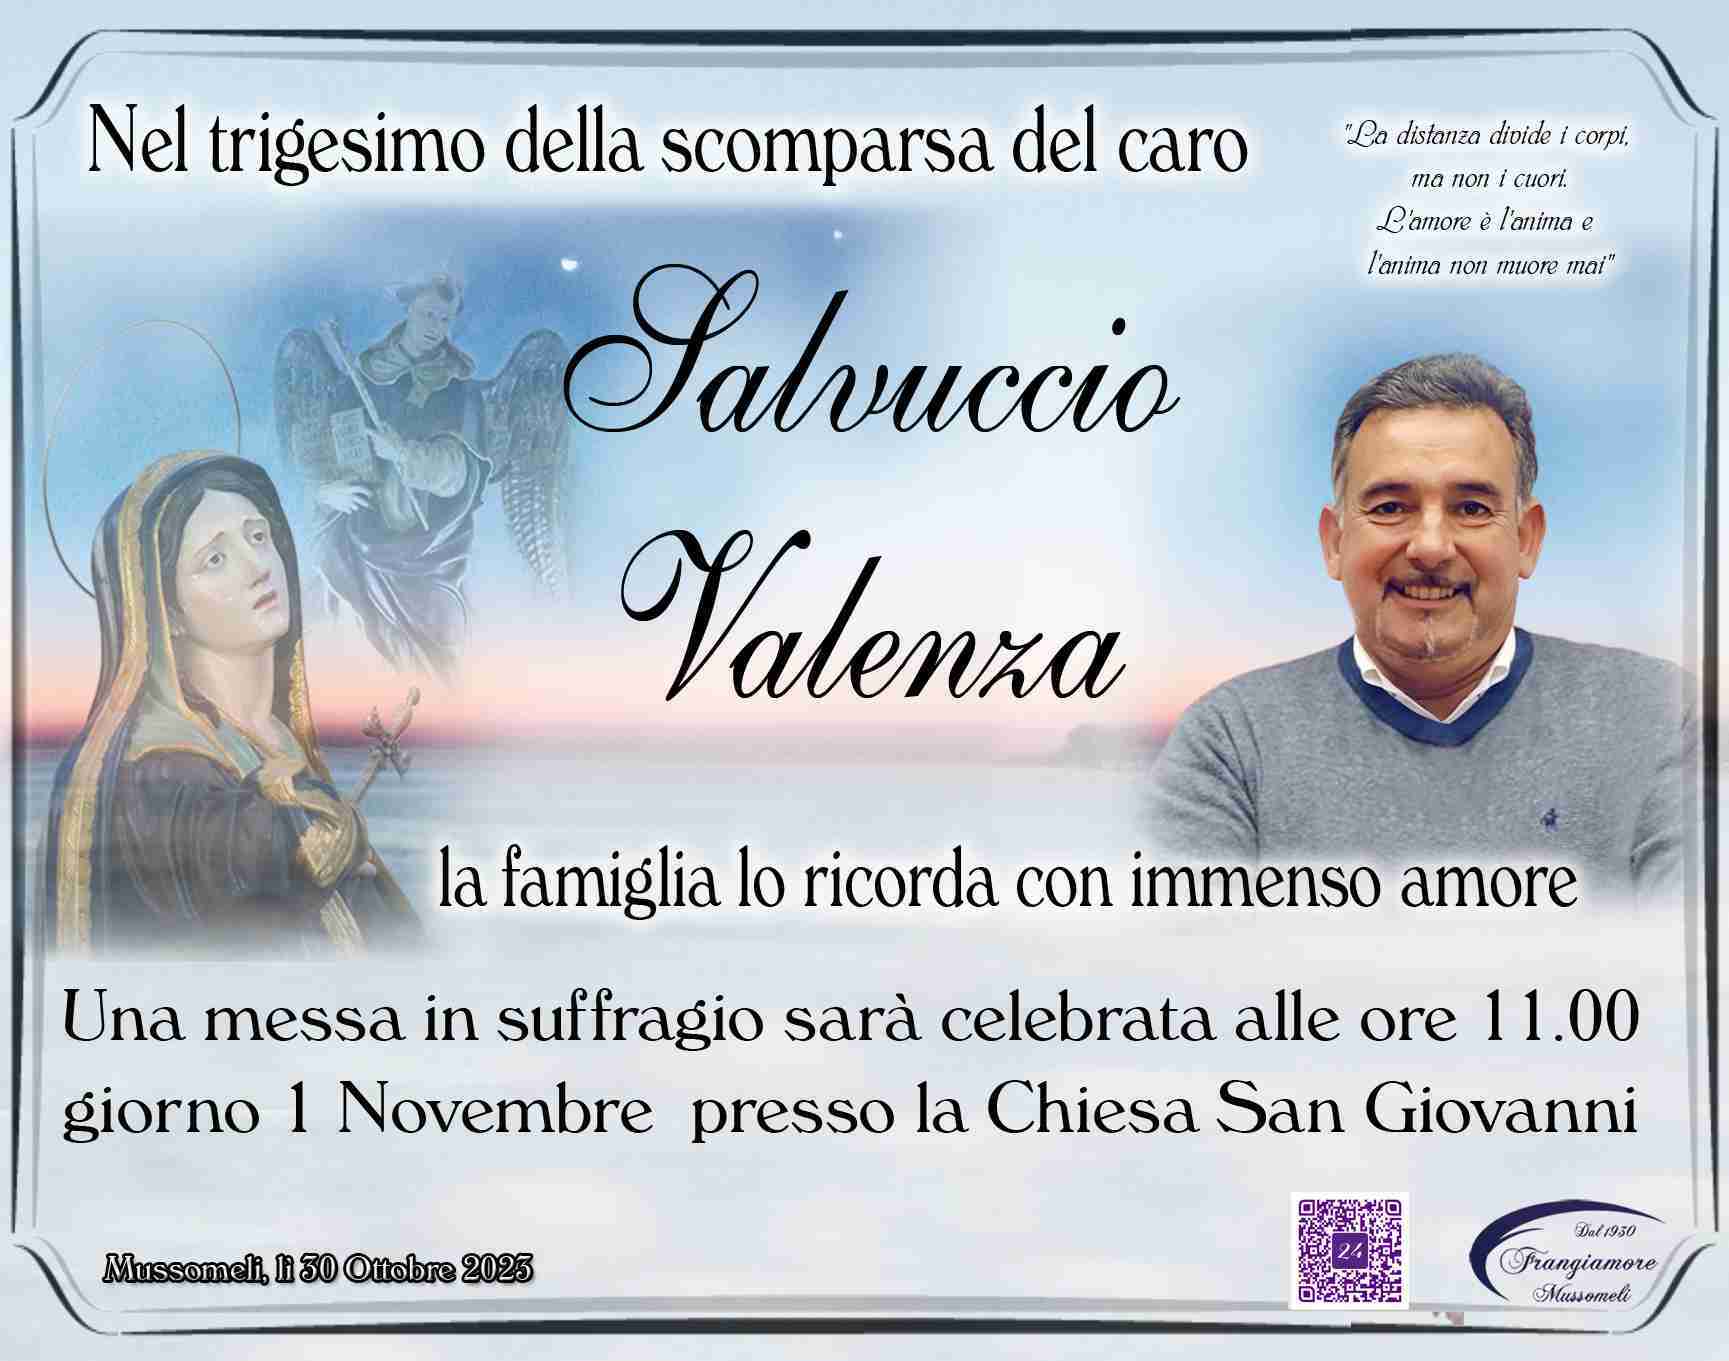 Salvuccio Valenza